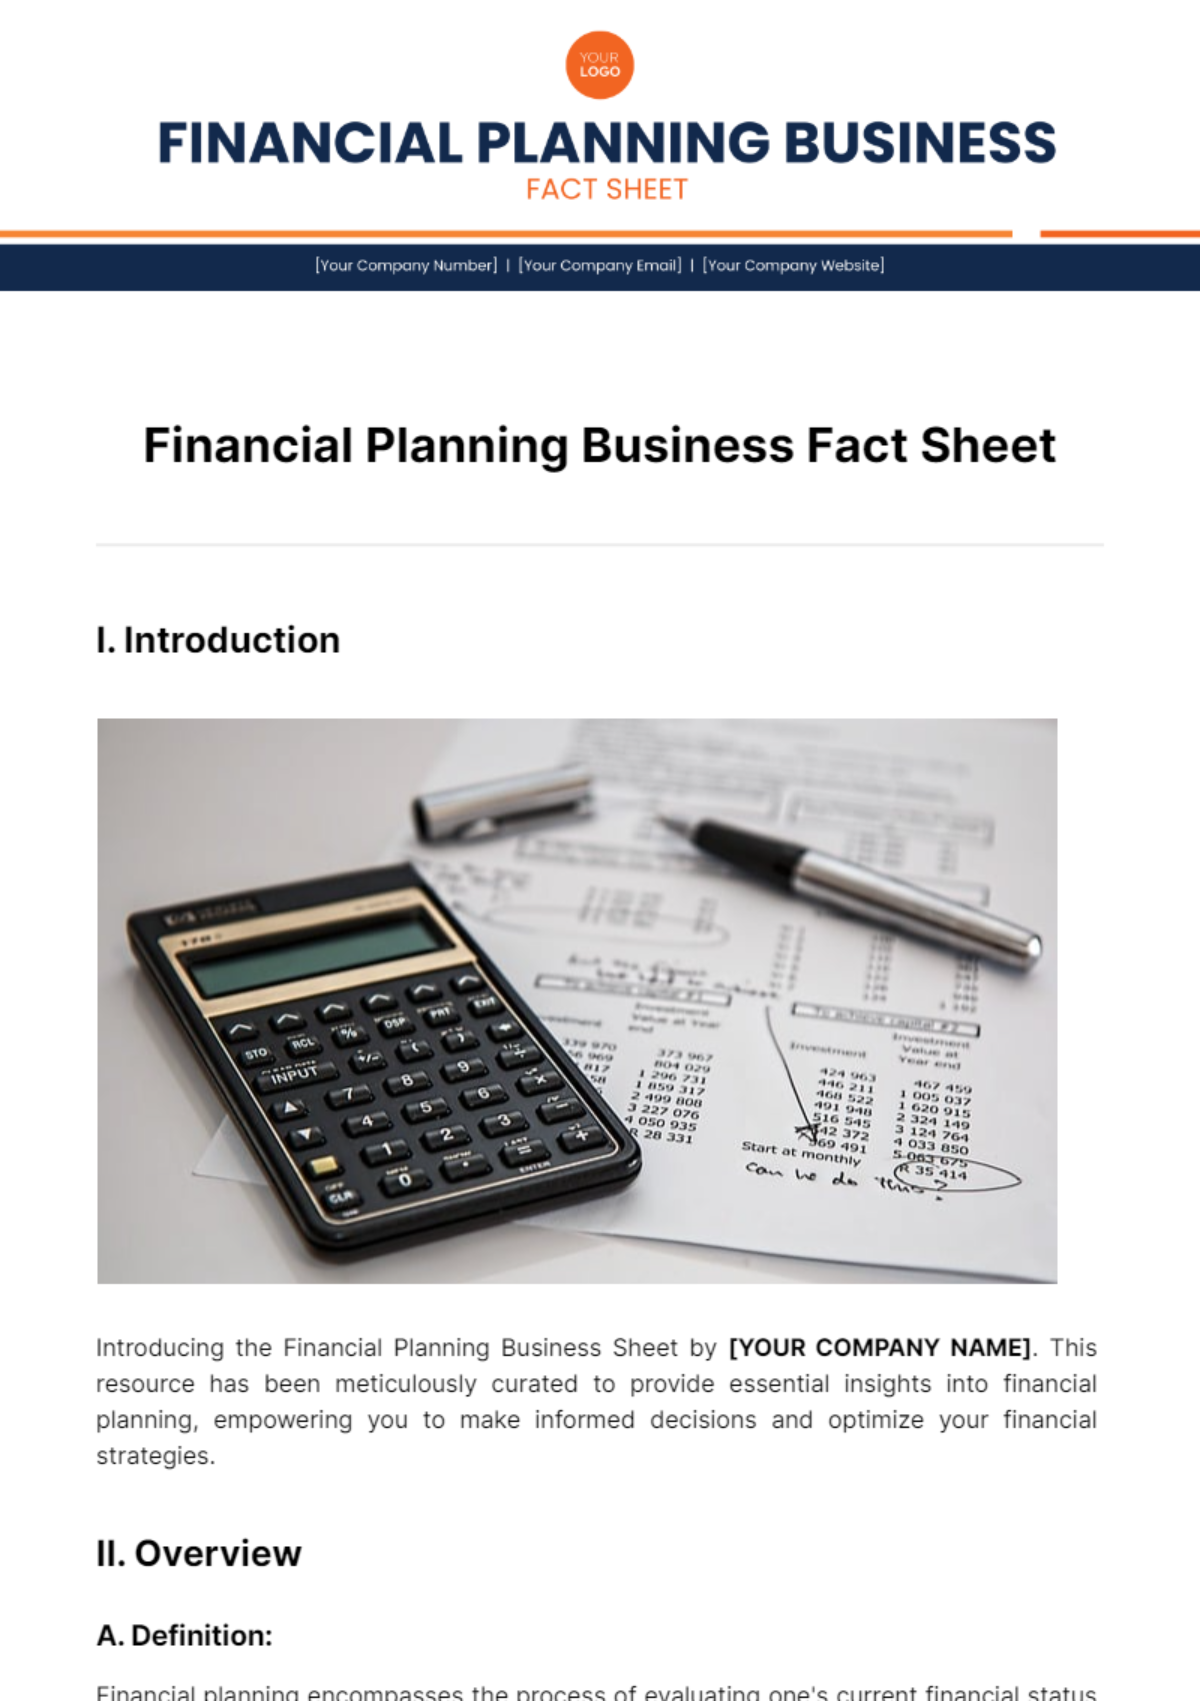 Financial Planning Business Fact Sheet Template